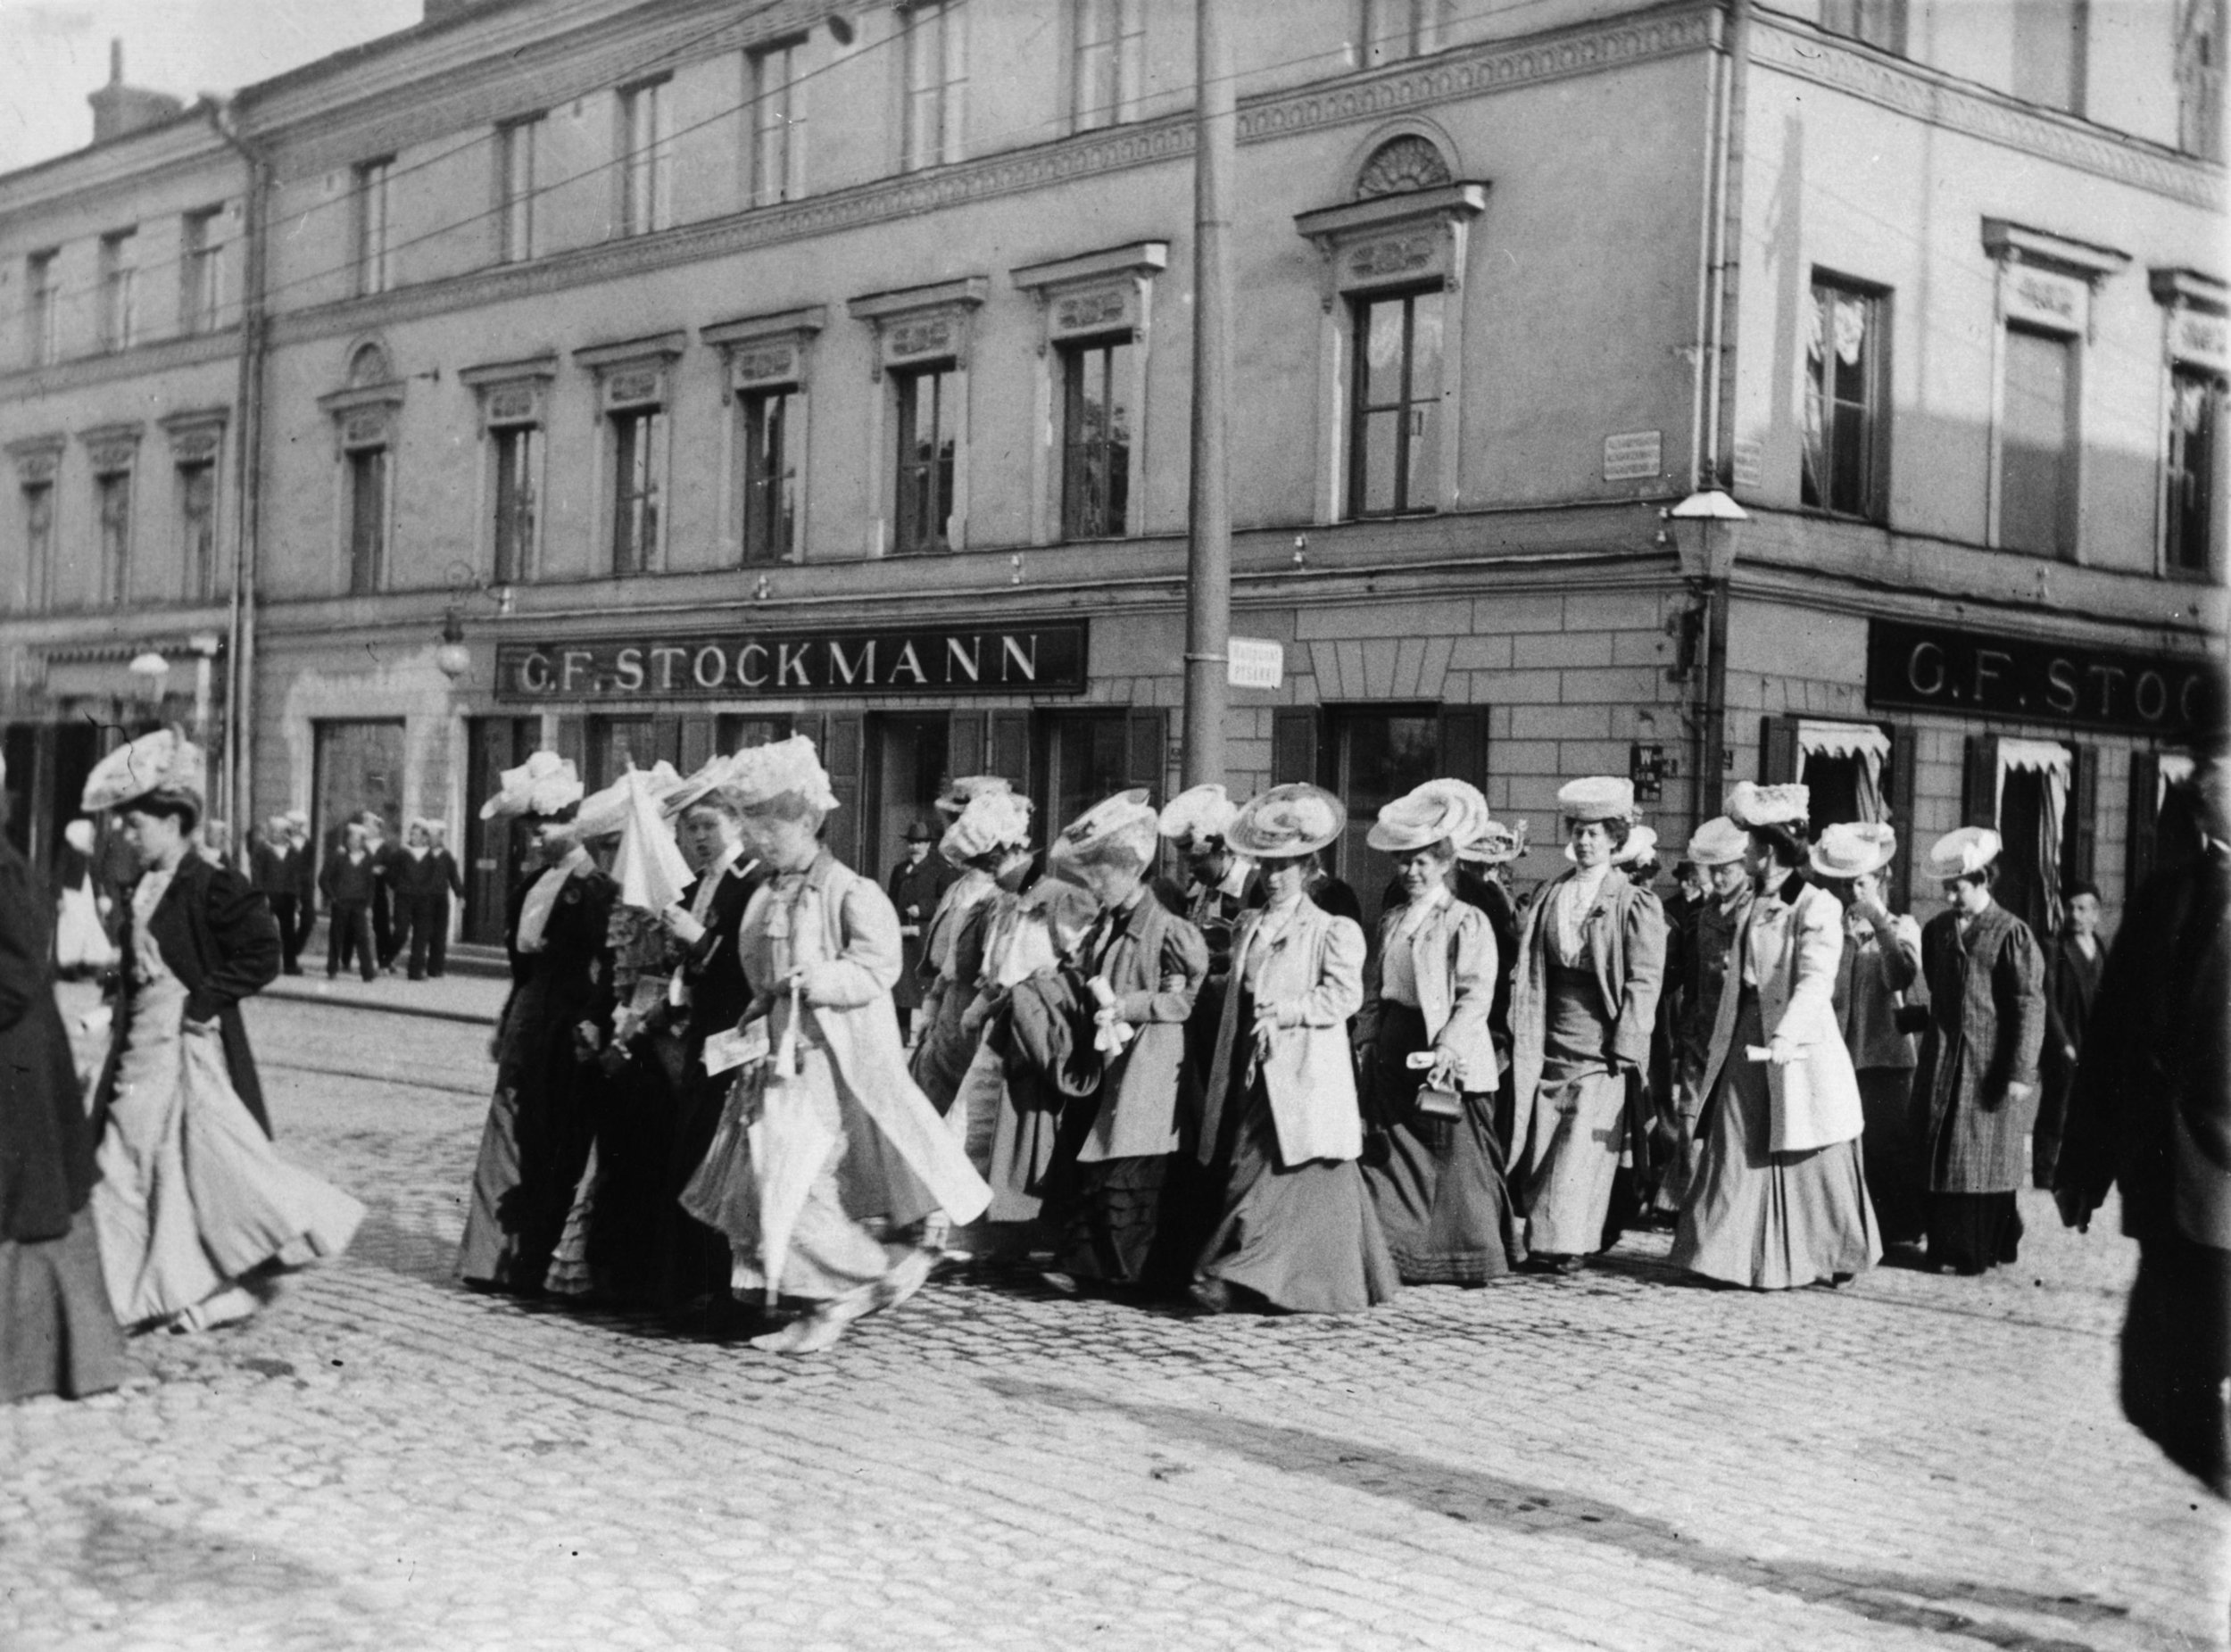 Naisten mielenosoitusmarssi mahdollisesti äänioikeuden puolesta, 1905. Kuva: Helsingin kaupunginmuseo